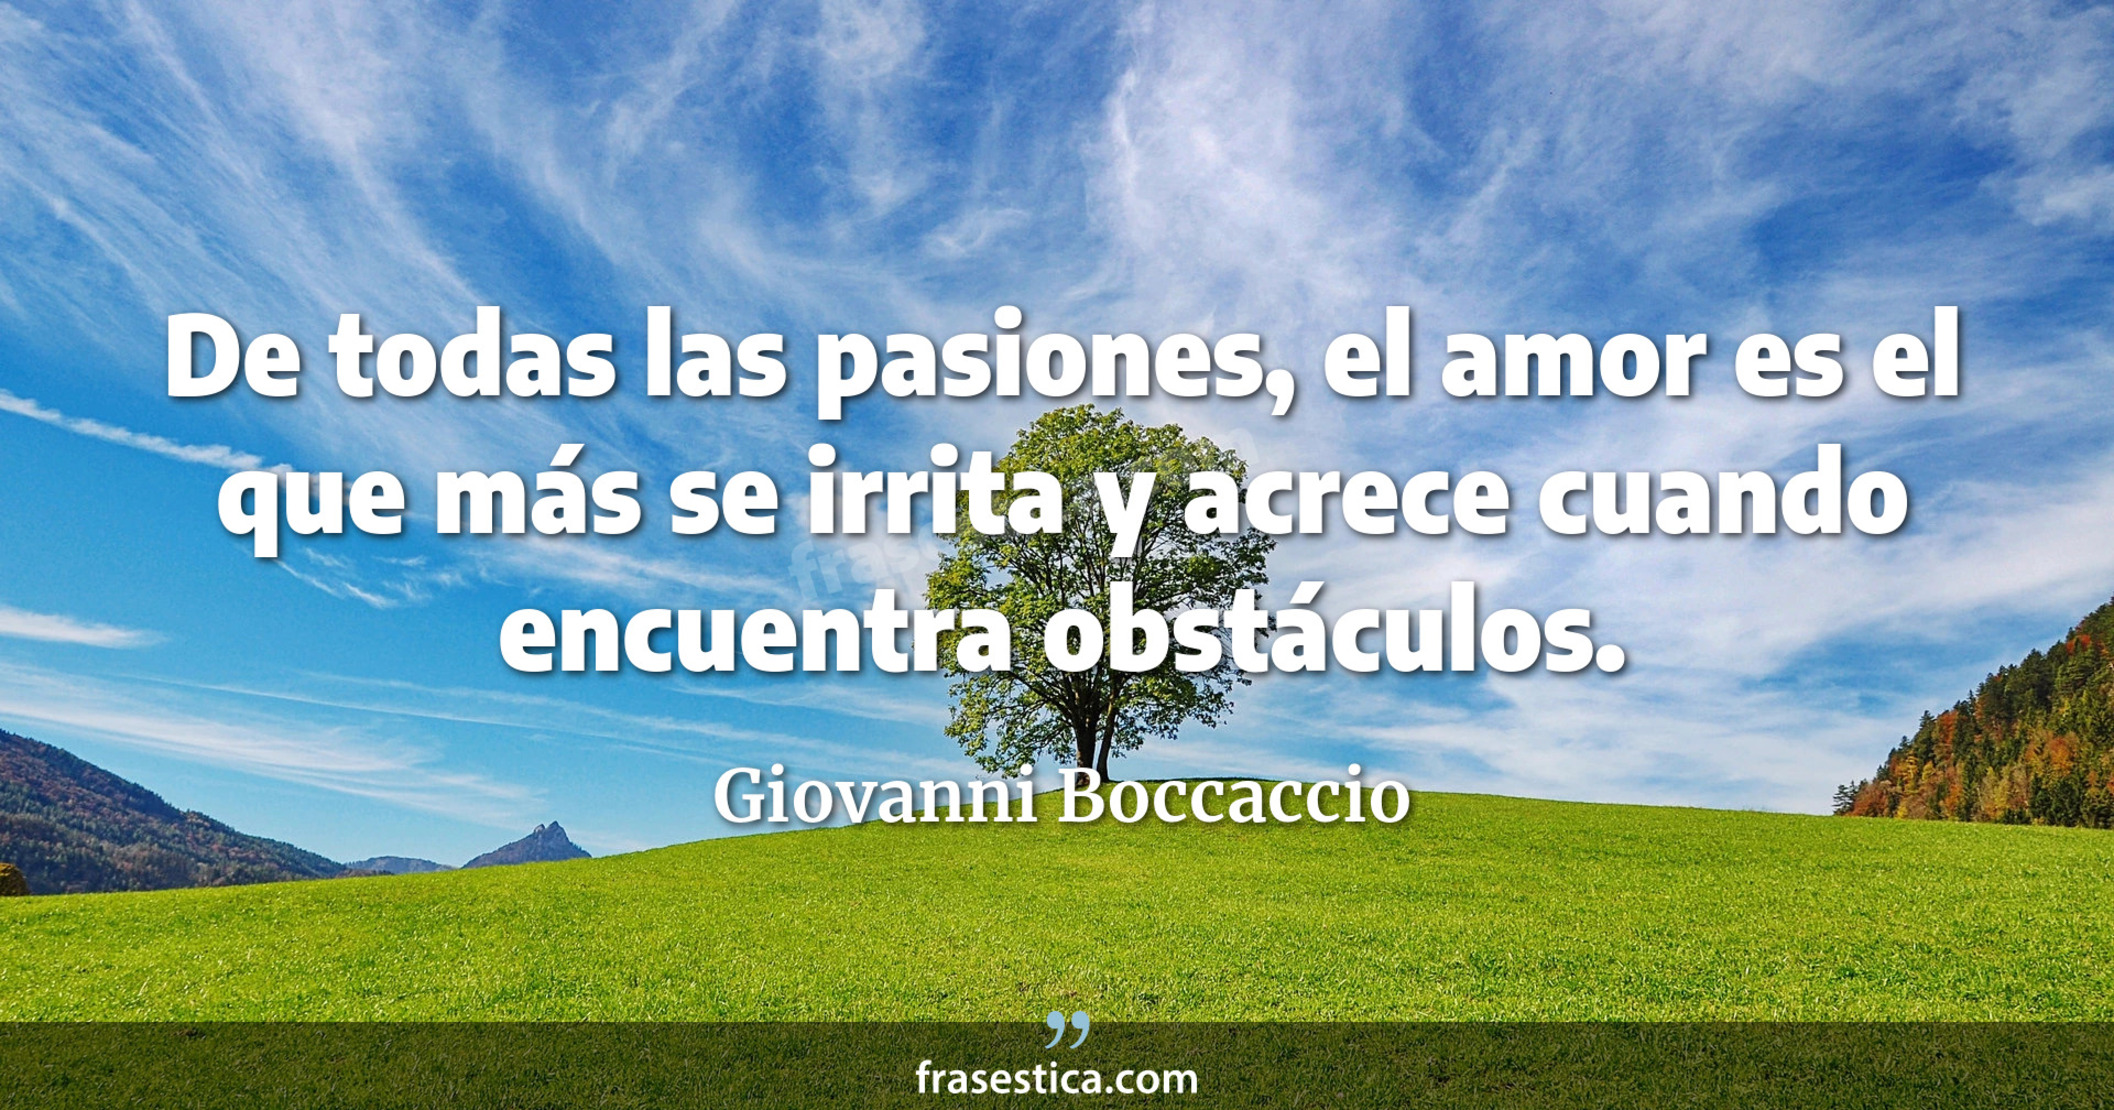 De todas las pasiones, el amor es el que más se irrita y acrece cuando encuentra obstáculos. - Giovanni Boccaccio